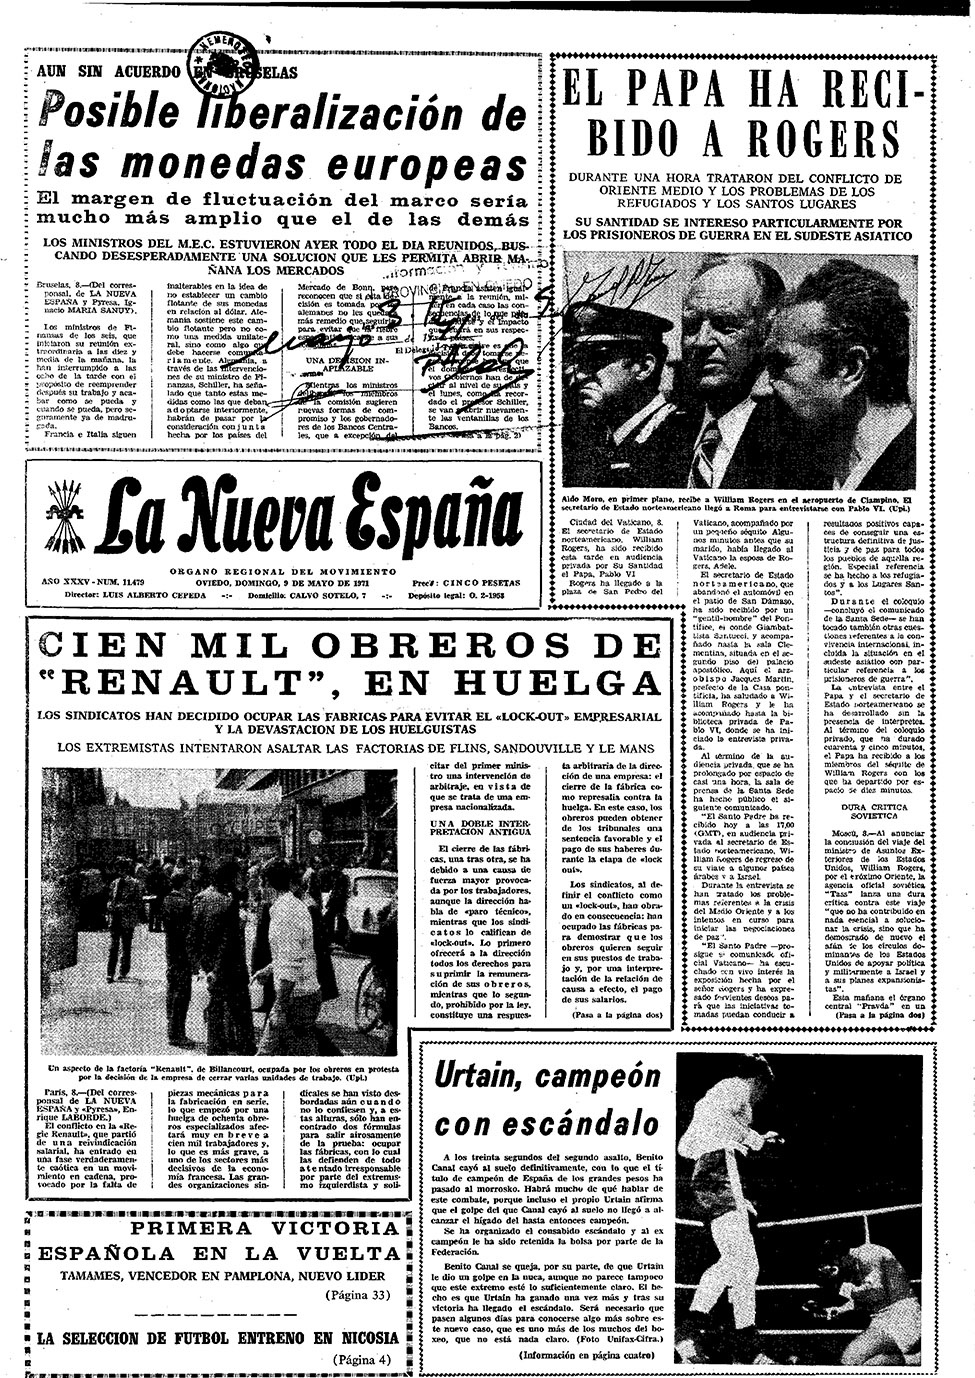 Portada del Domingo, 9 de Mayo de 1971